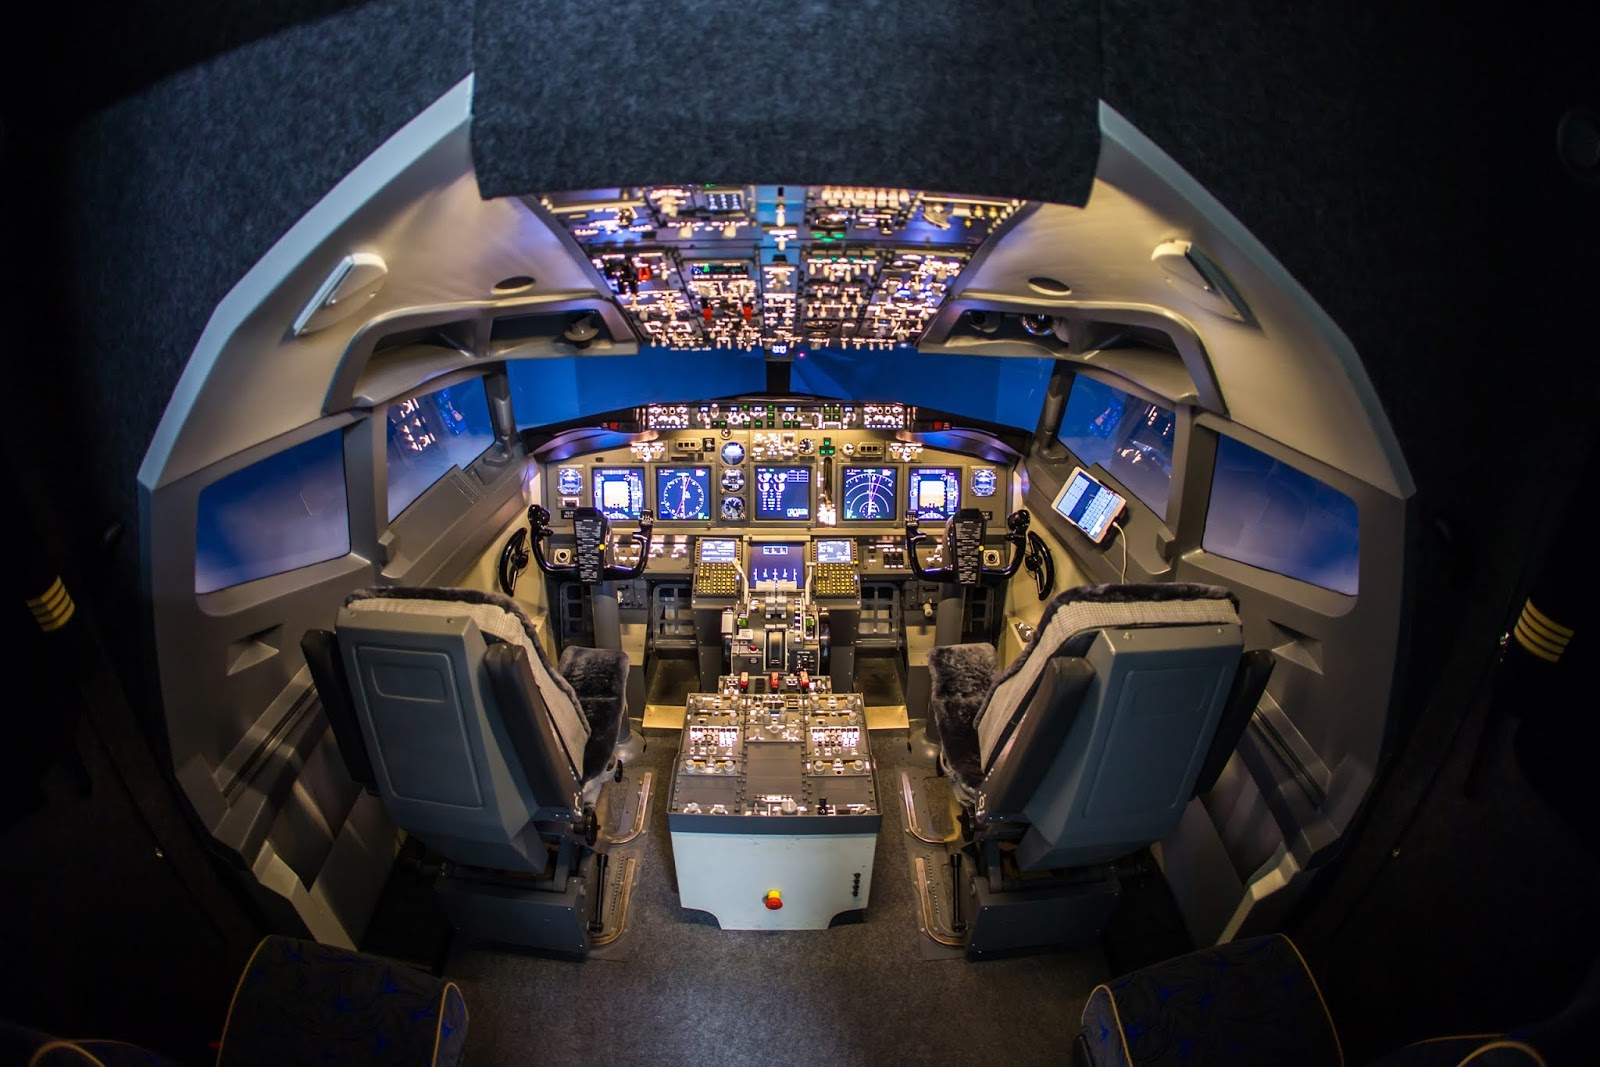 air101-dream-aero-boeing-737-flight-simulator-opens-to-the-public-in